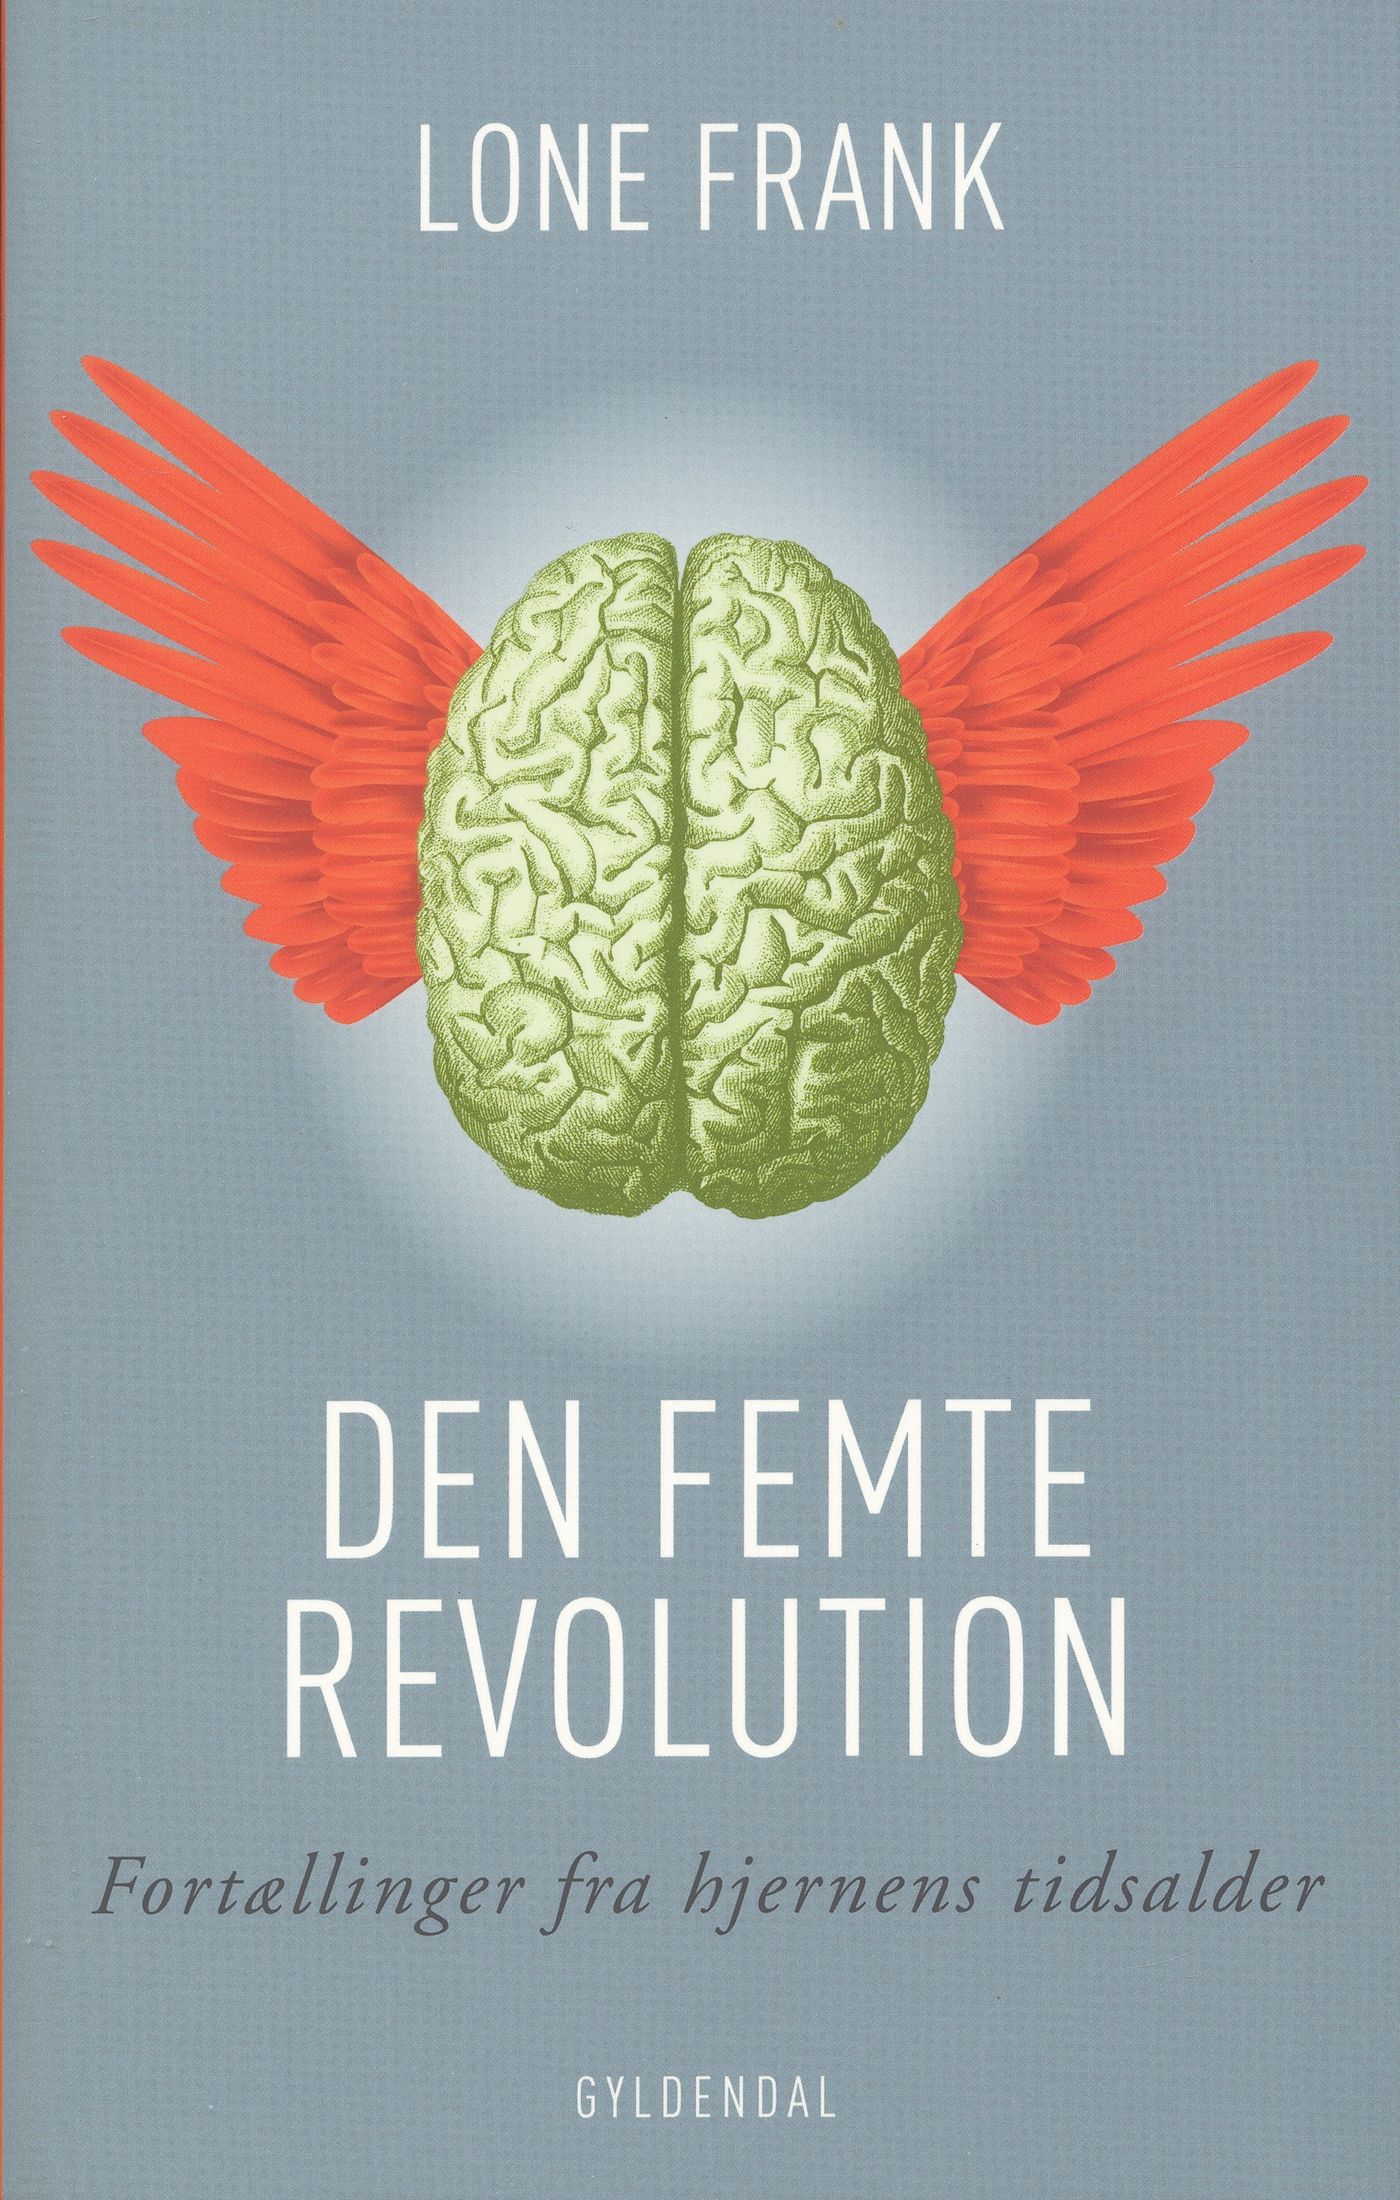 Den femte revolution, e-bok av Lone Frank